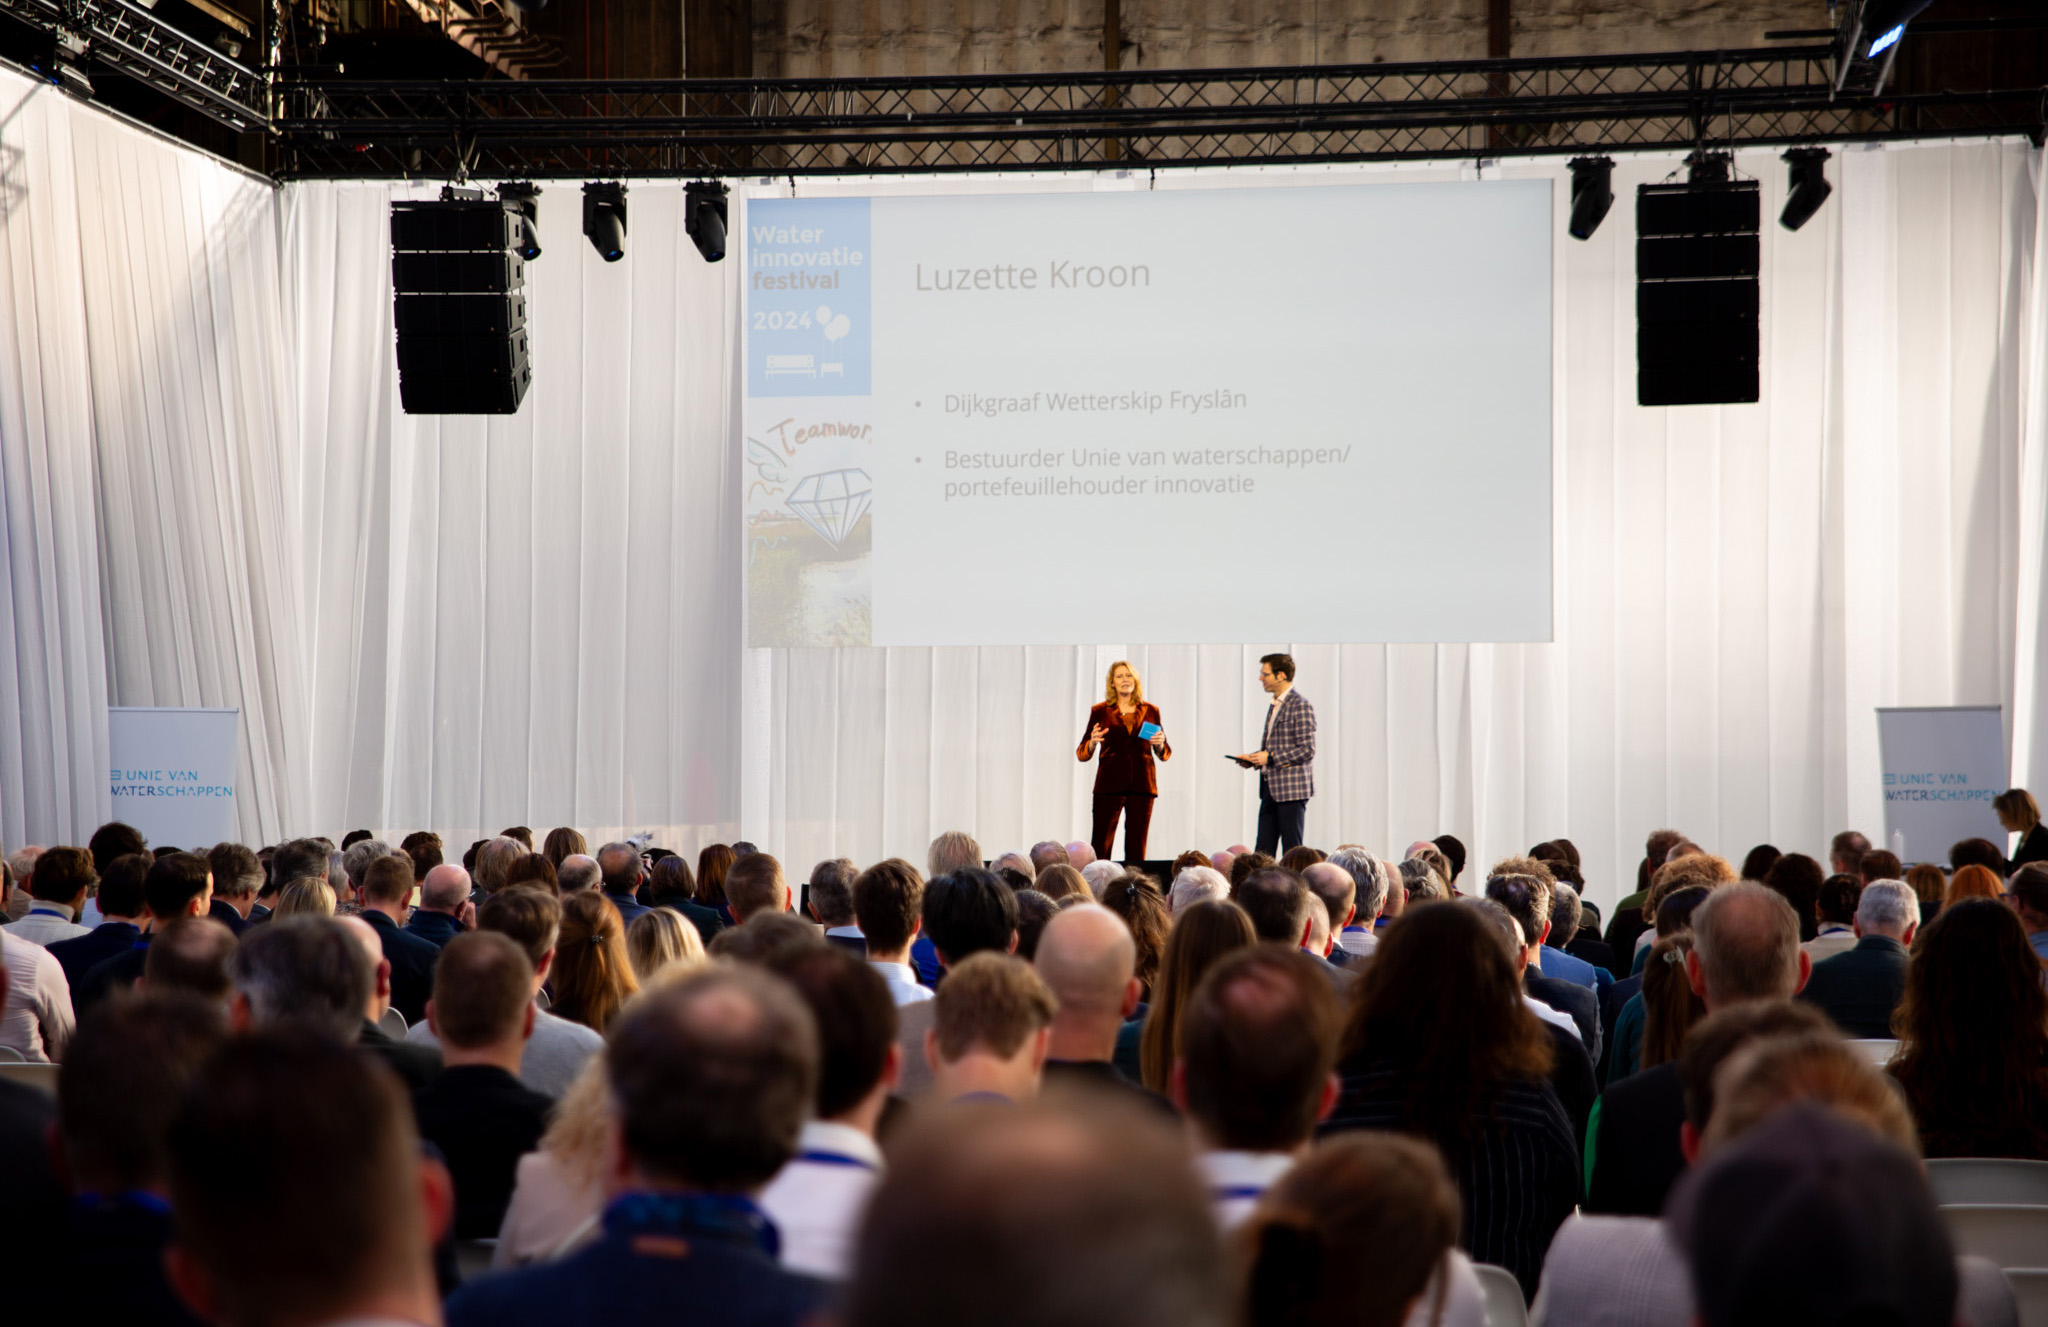 Waterinnovatiefestival: foto van achterin zaal met op podium moderator en Luzette Kroon